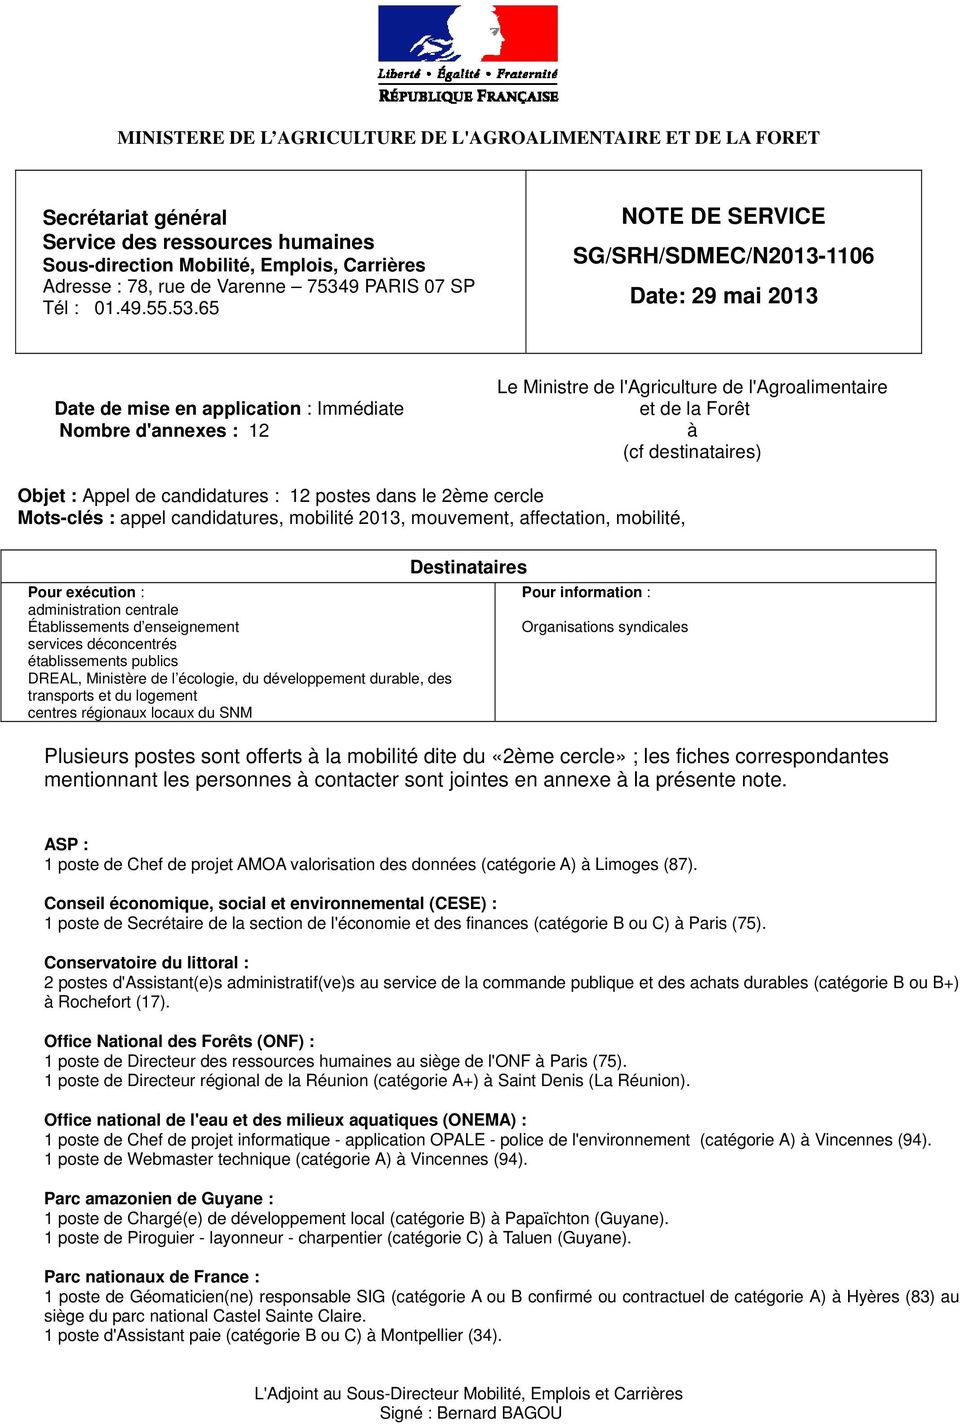 65 NOTE DE SERVICE SG/SRH/SDMEC/N2013-1106 Date: 29 mai 2013 Date de mise en application : Immédiate Nombre d'annexes : 12 Le Ministre de l'agriculture de l'agroalimentaire et de la Forêt à (cf